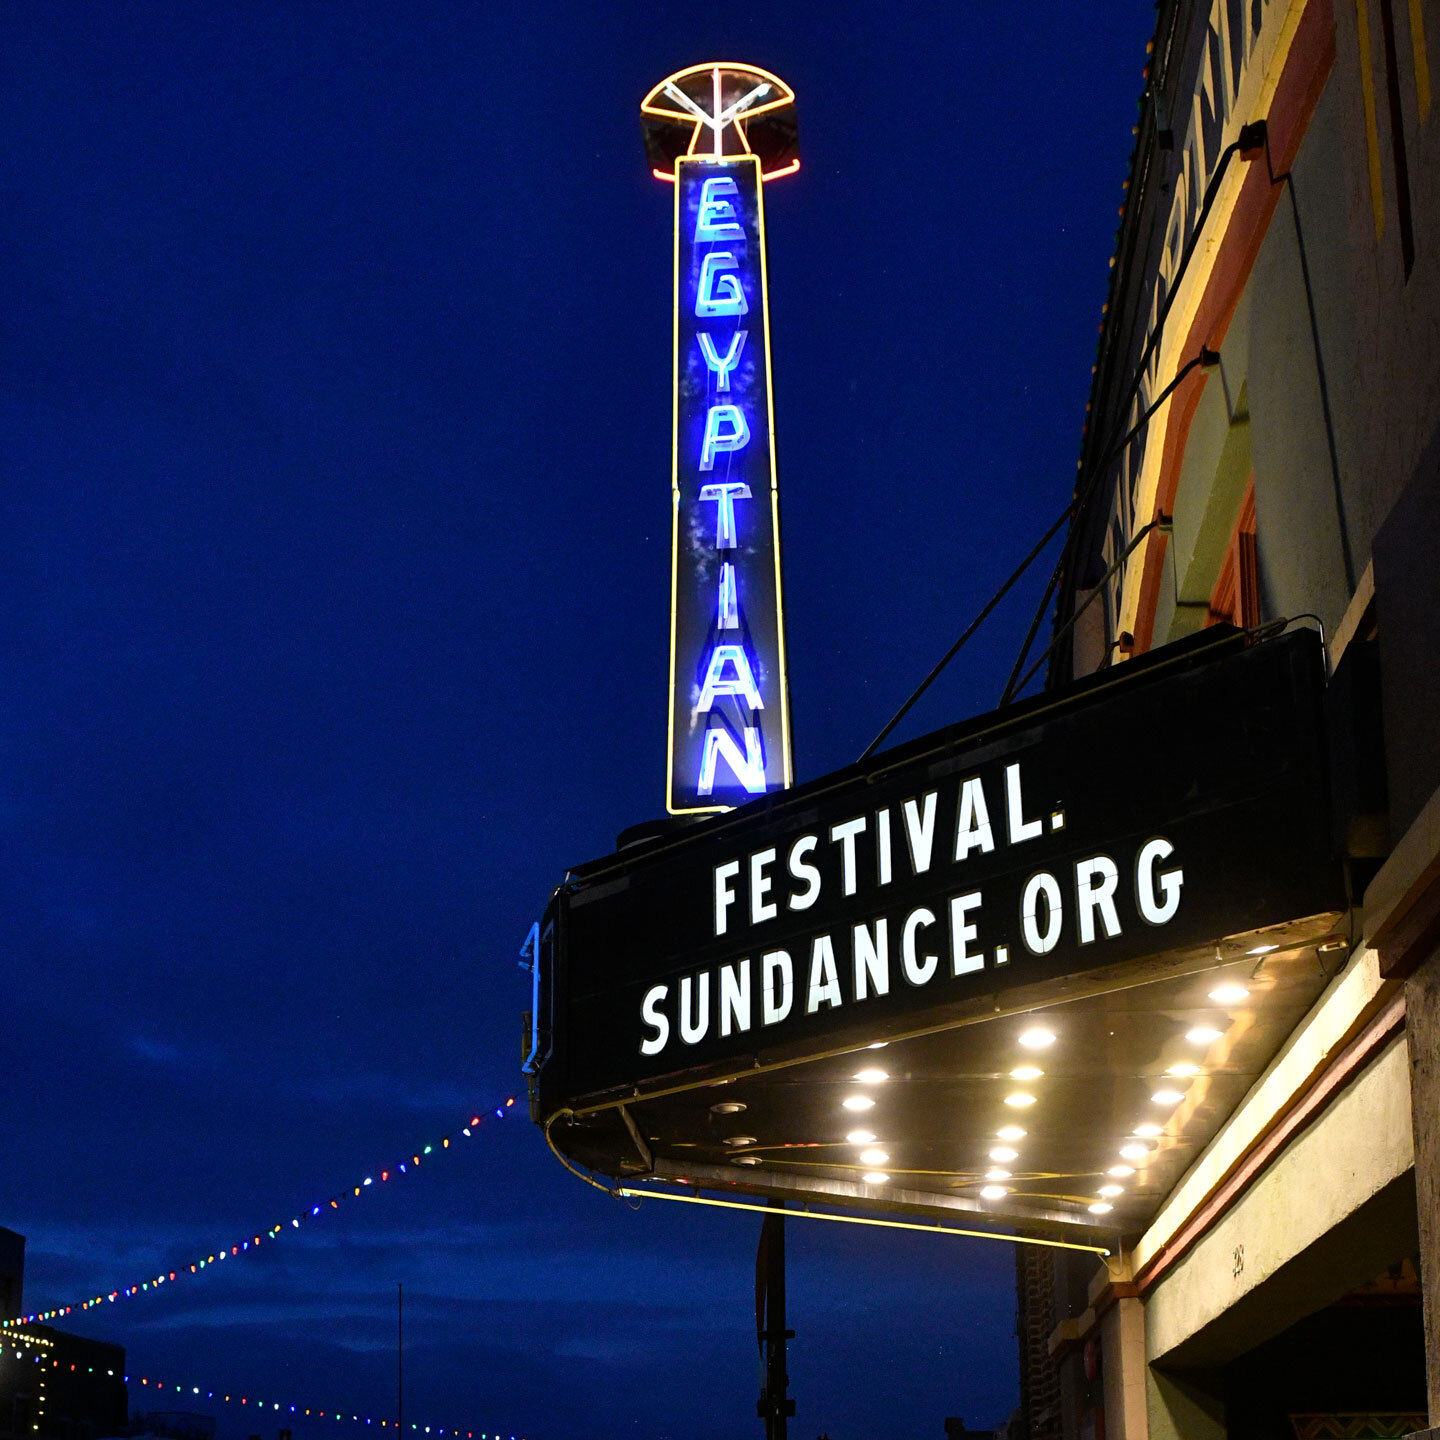 L'Egyptian Theatre per il Sundance Film Festival con l'insegna Festival.Sundance.Org